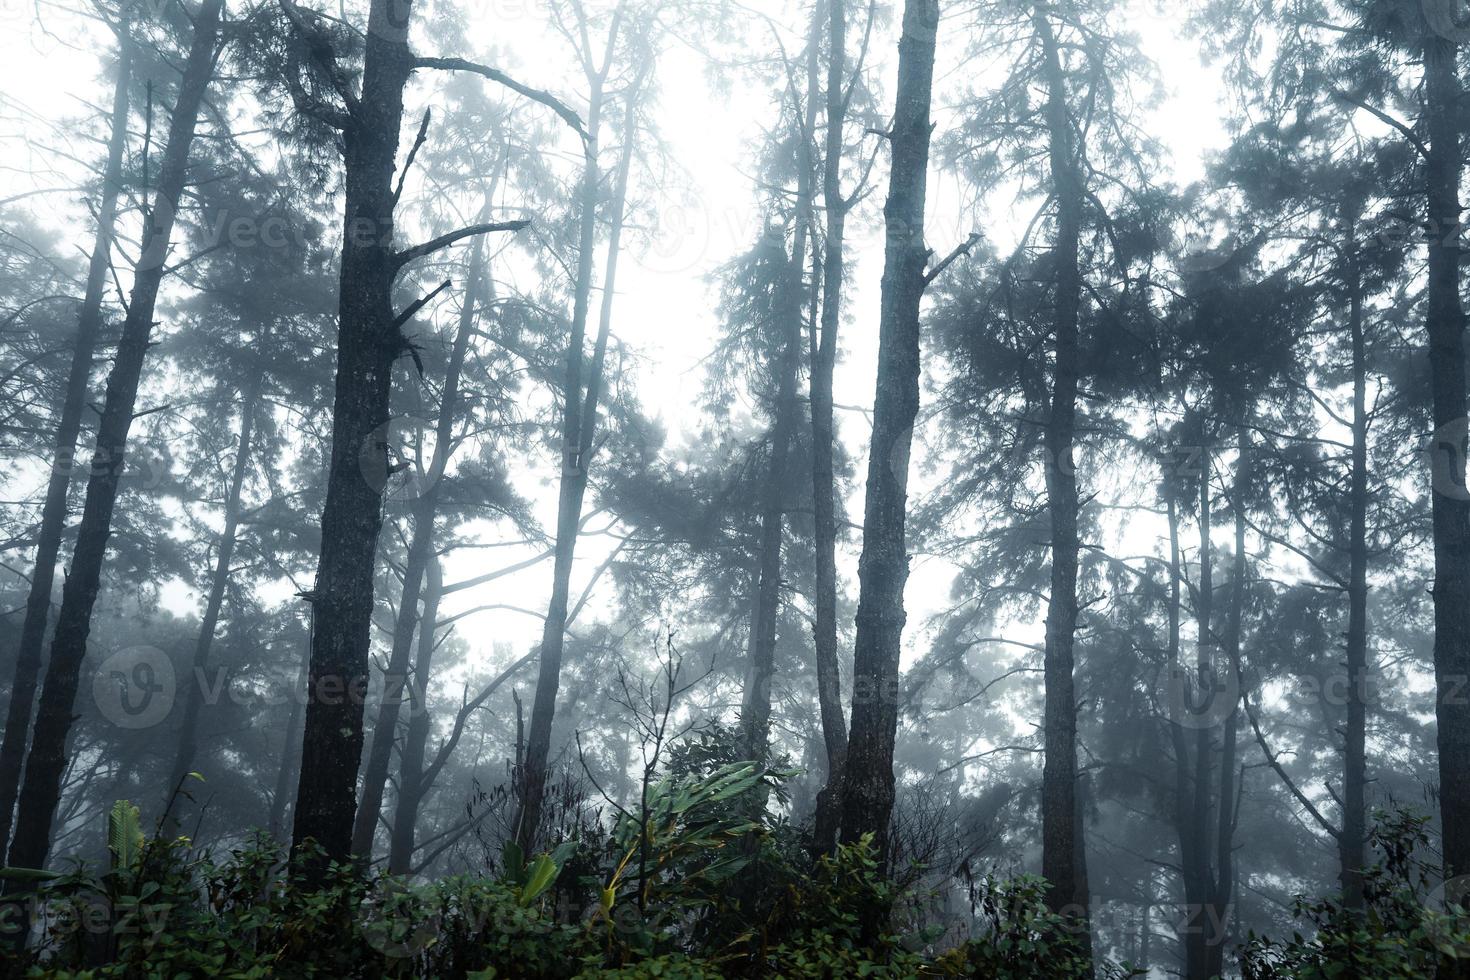 foresta nella nebbiosa giornata di pioggia, felci e alberi foto